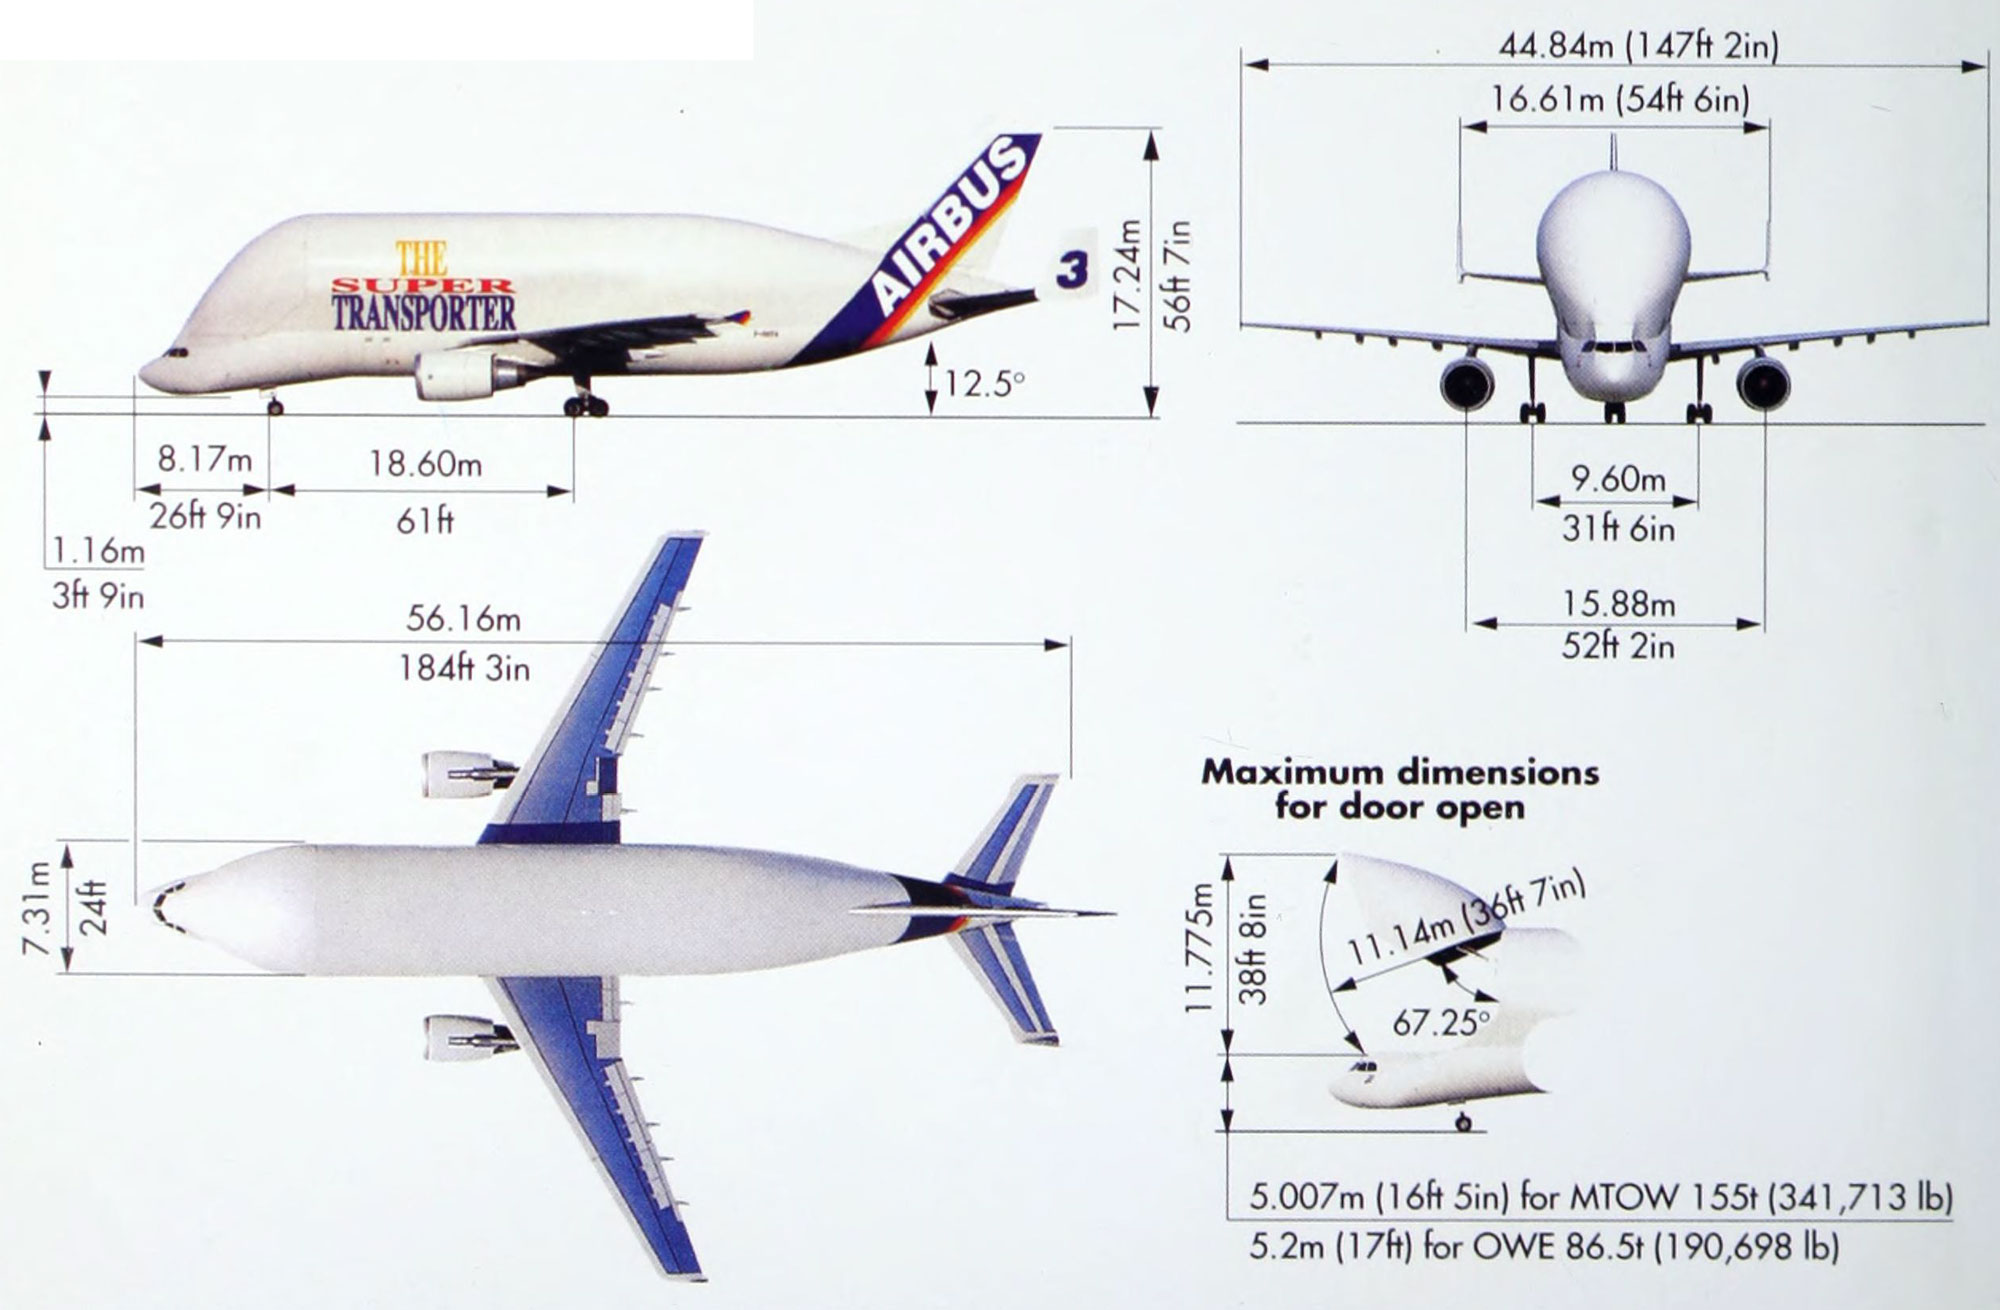 Airbus 319: нумерация кресел и лучшие места, эксплуатирующие авиаперевозчики